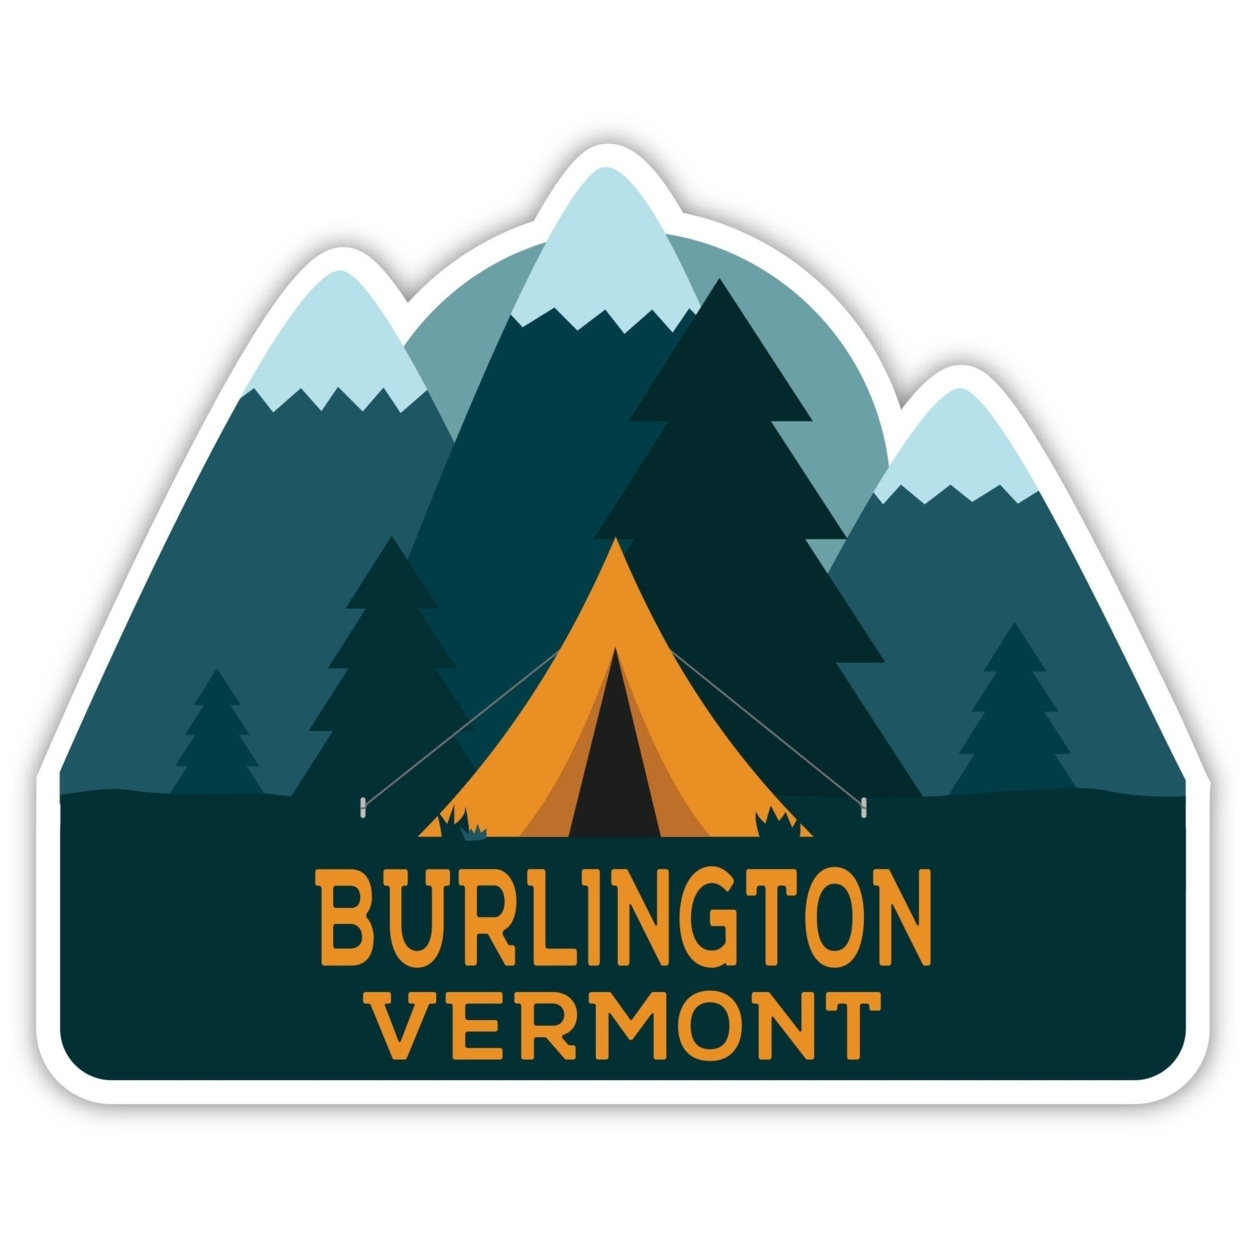 Burlington Vermont Souvenir Decorative Stickers (Choose Theme And Size) - 4-Pack, 8-Inch, Tent